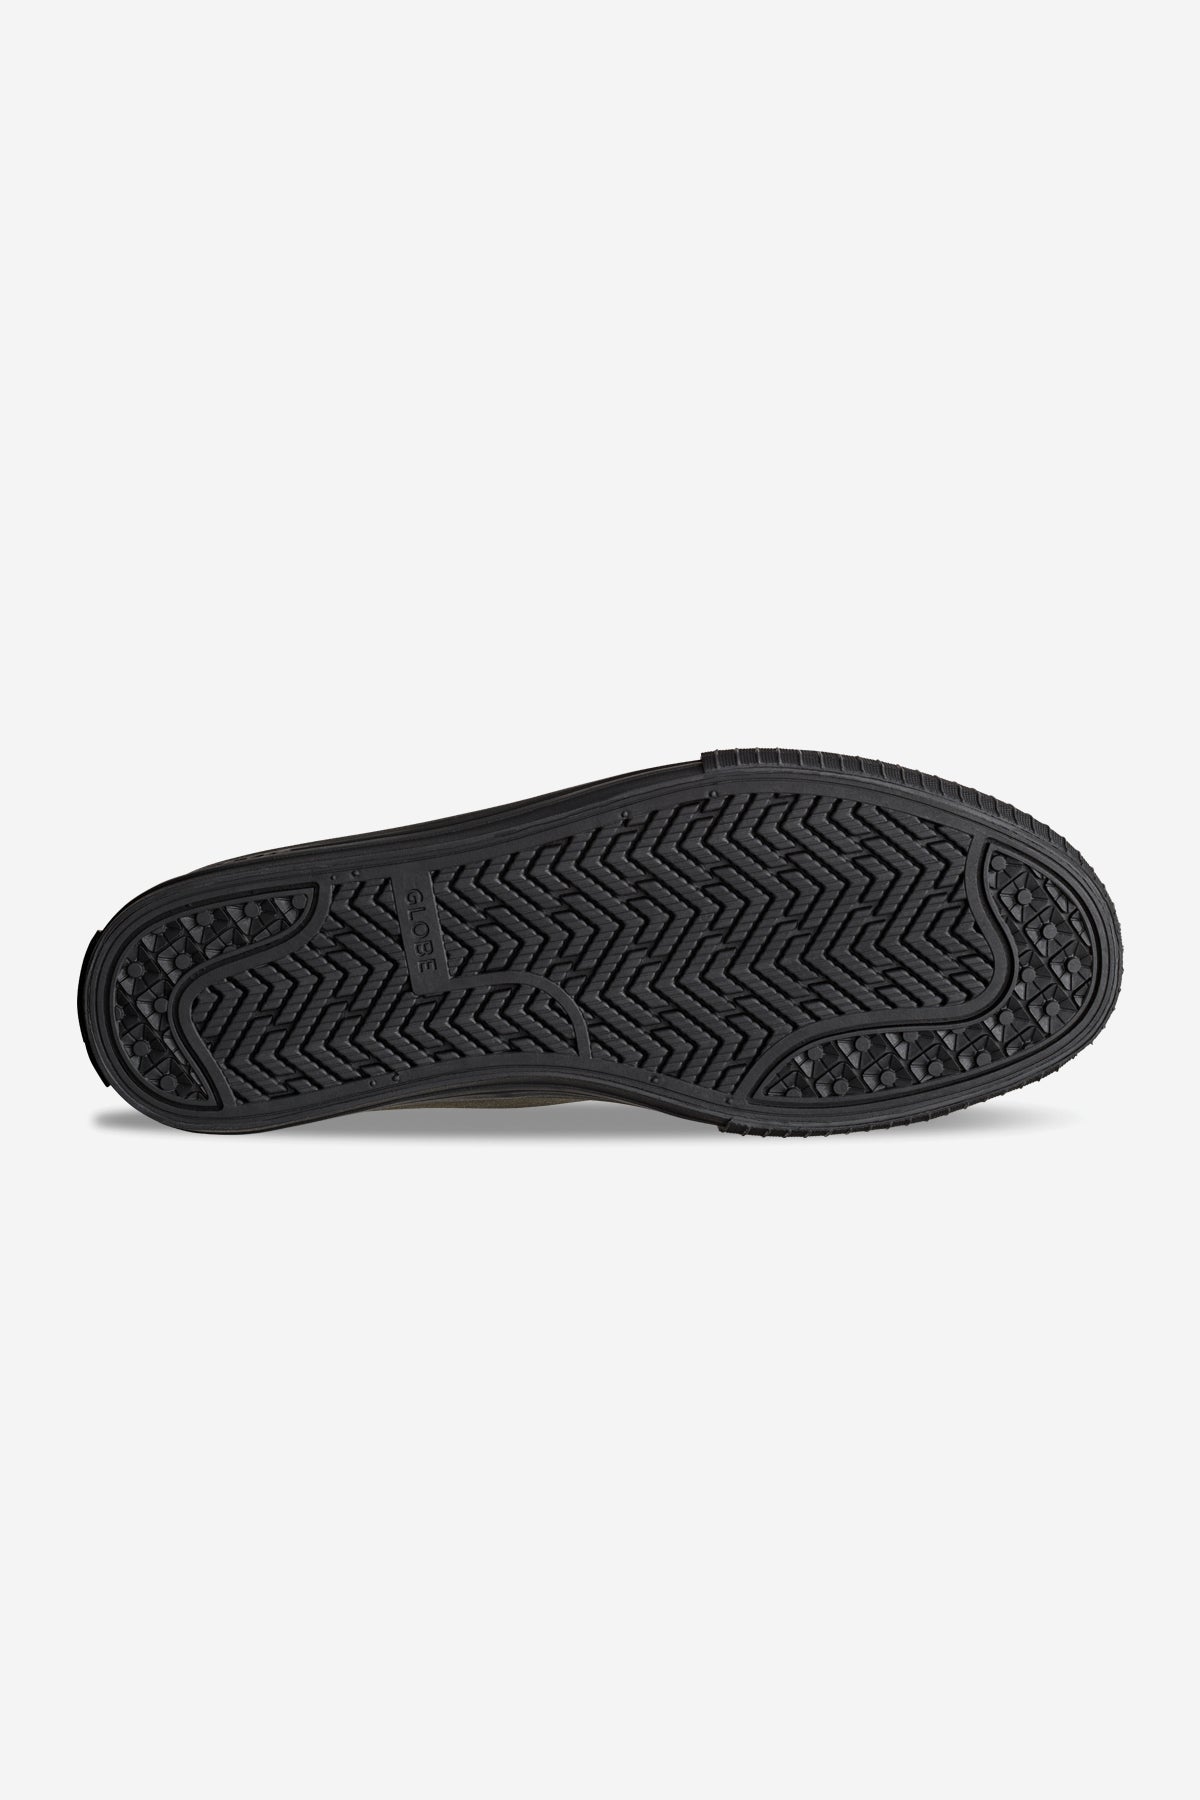 Globe - Gillette Mid - Escuro Olive/Preto - skateboard Sapatos